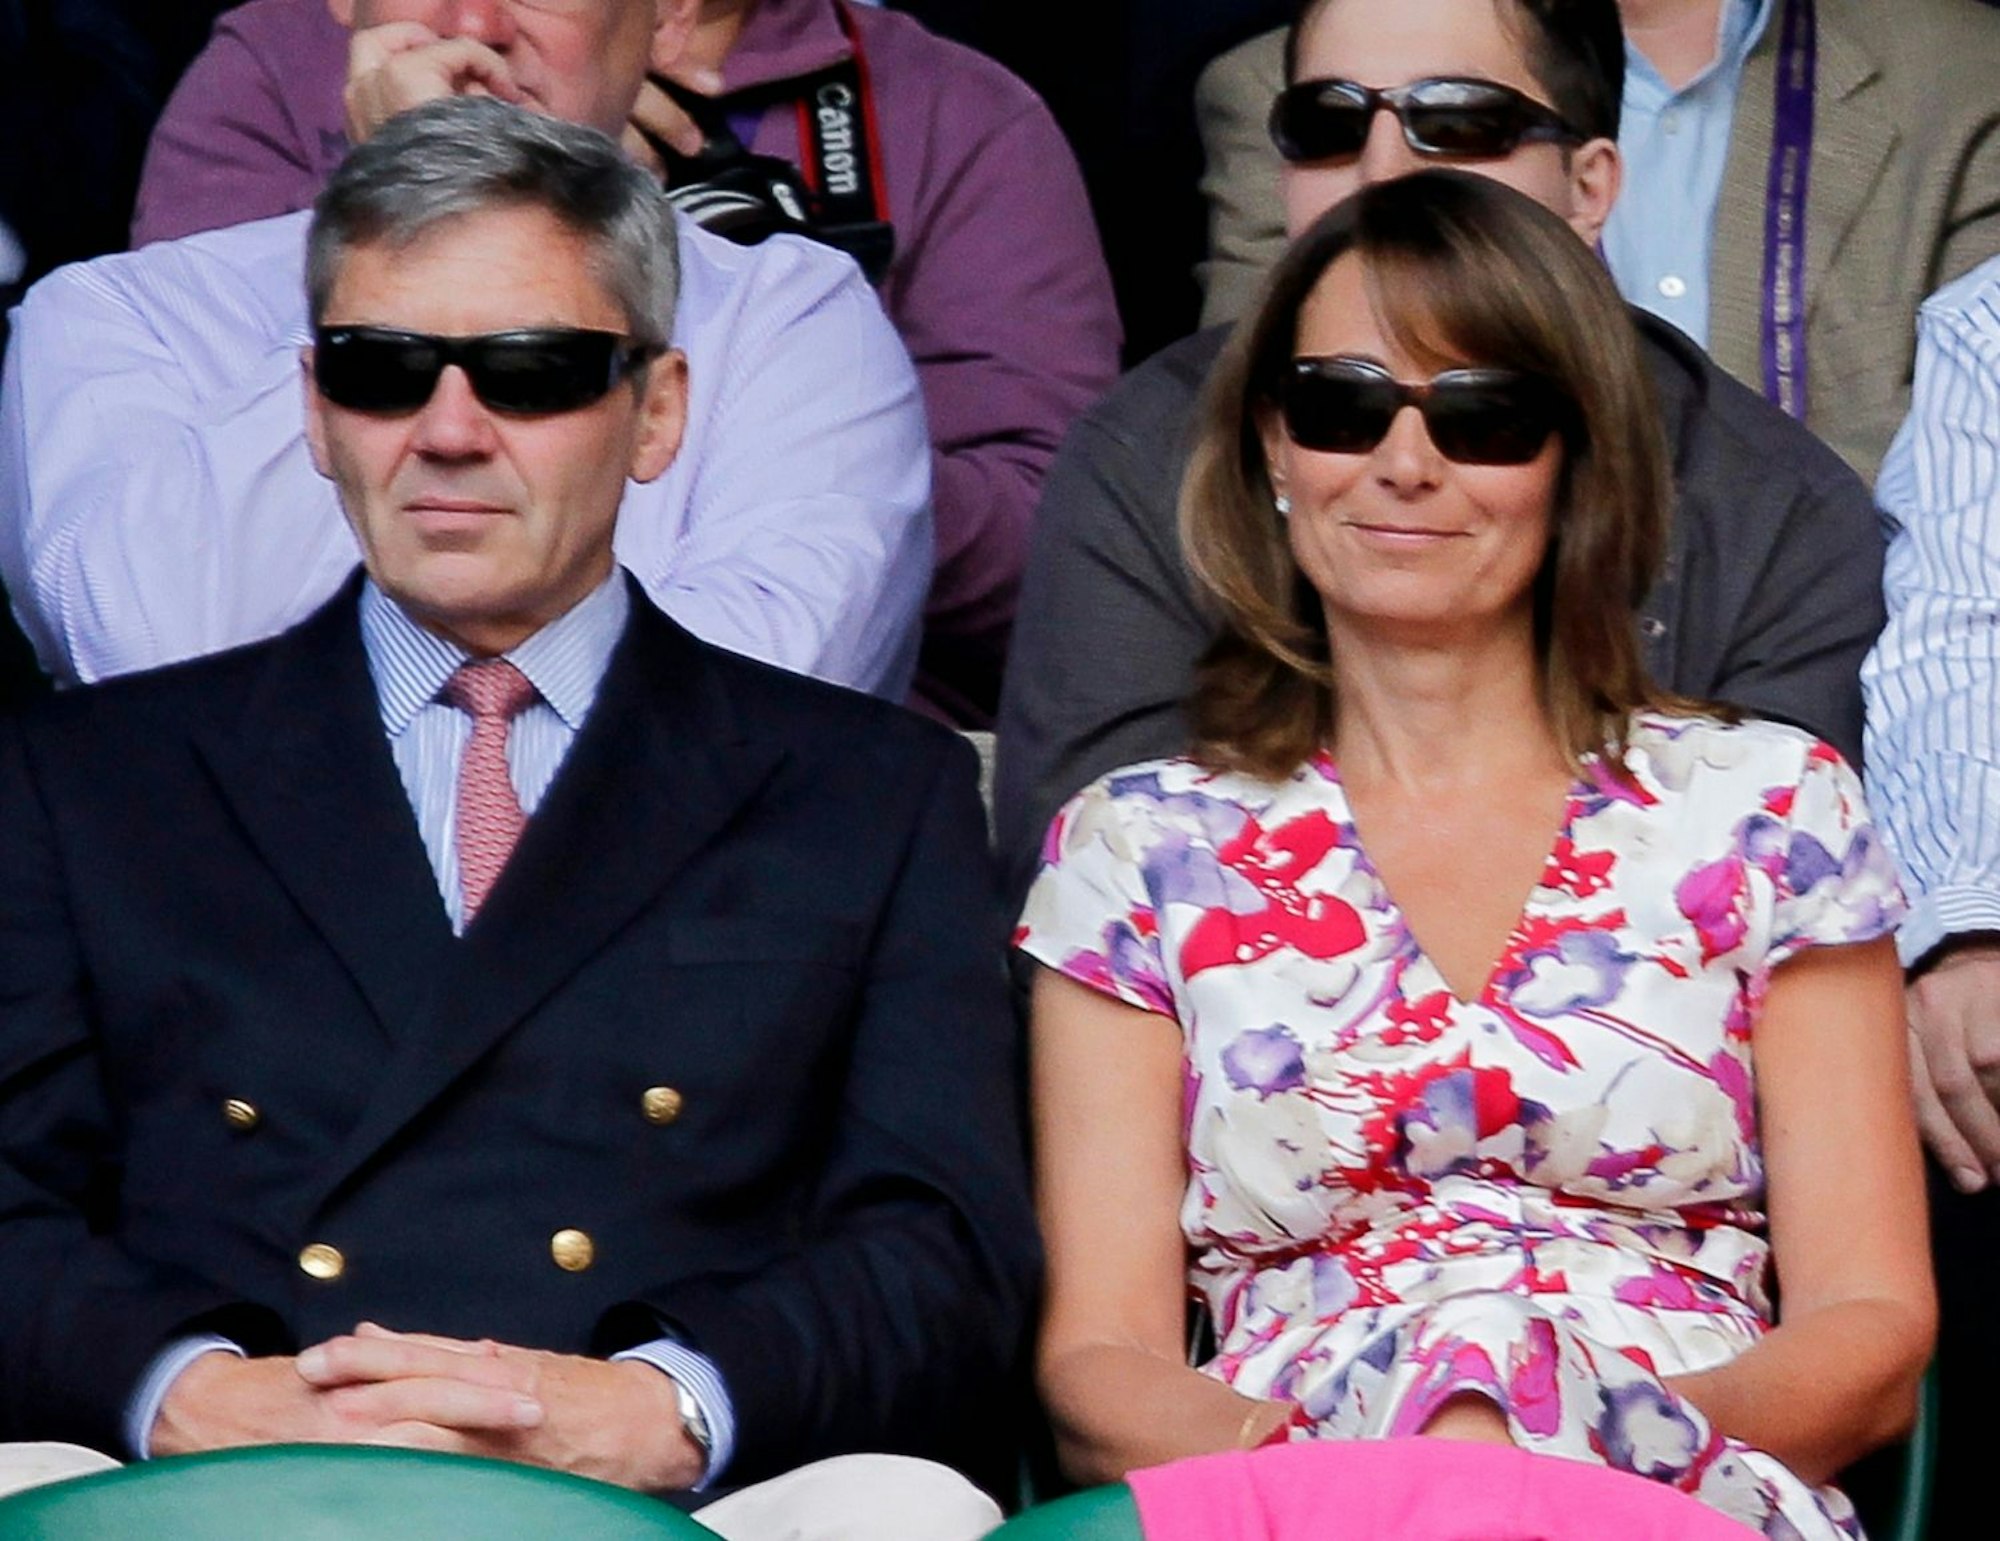 Carole und Michael Middleton, die Eltern der Prinzessin von Wales, beim Tennis-Turnier von Wimbledon im Jahr 2011. Kate hat noch eine jüngere Schwester, Pippa, und einen jüngeren Bruder, James.